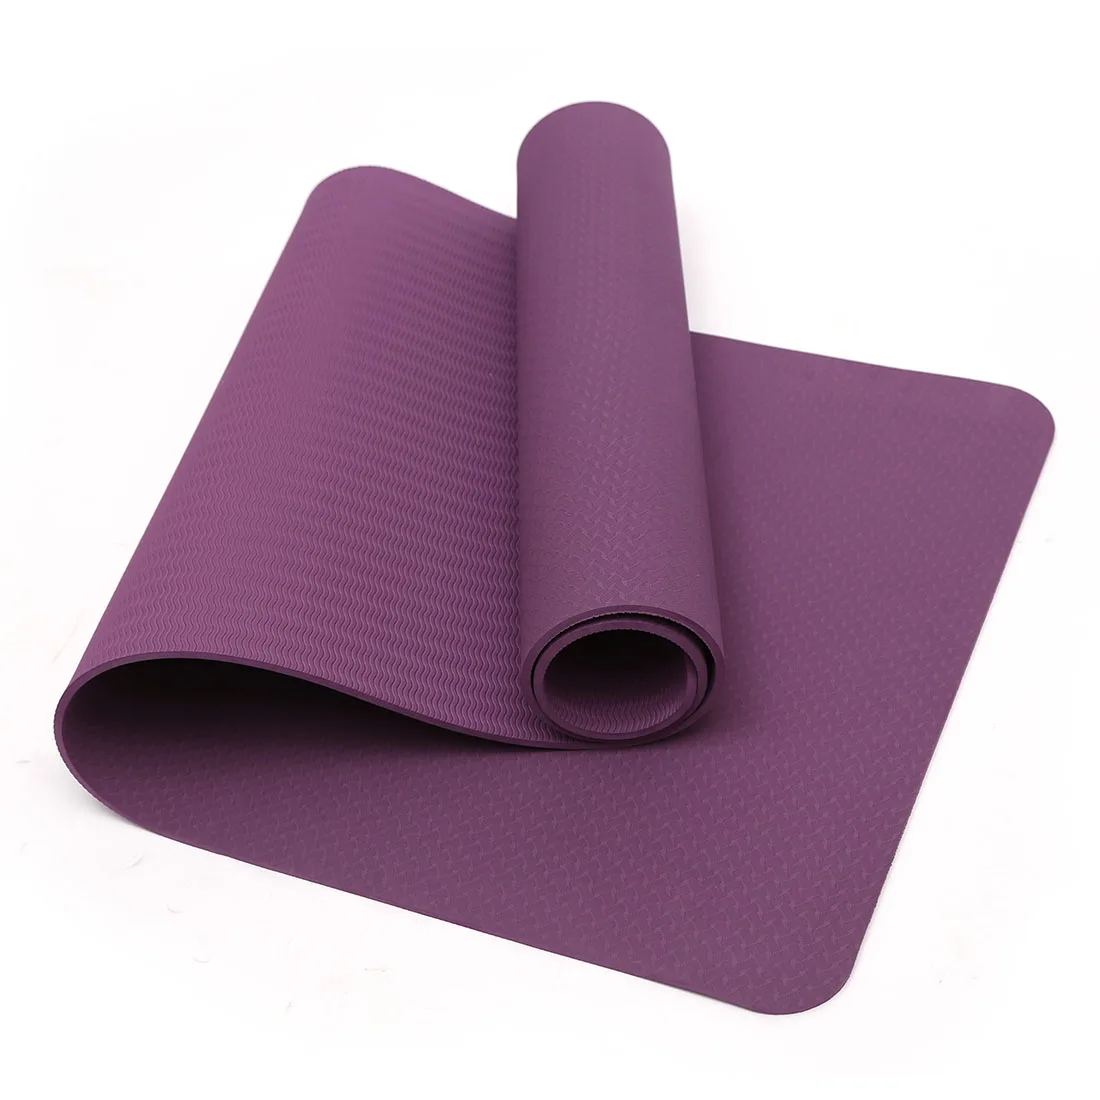 

183CM*61CM*6MM TPE Non-slip Yoga Mats For Fitness Tasteless Brand Pilates Mat Gym Exercise Sport Mats Pads